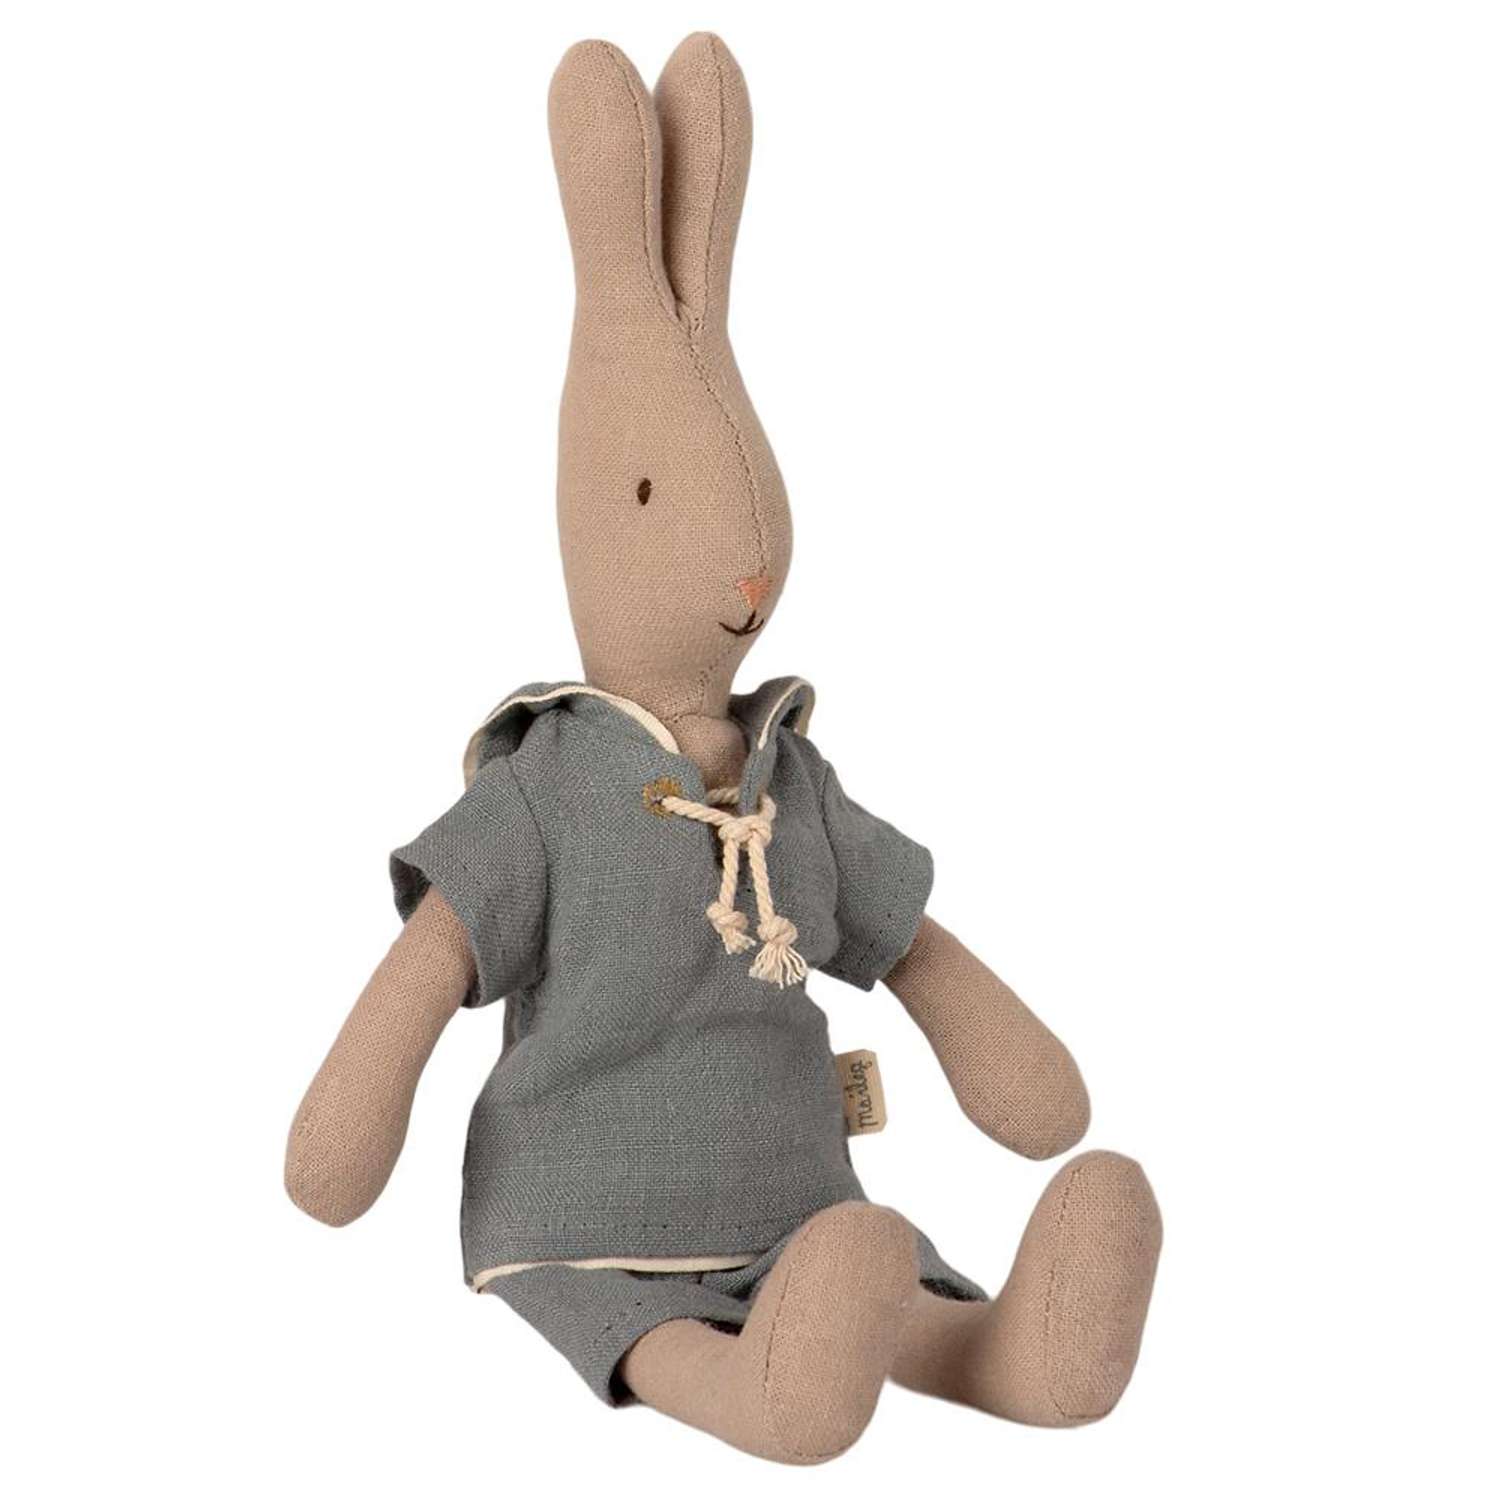 Мягкая игрушка Maileg Кролик размер 1 моряк в серо-голубом костюме - фото 2